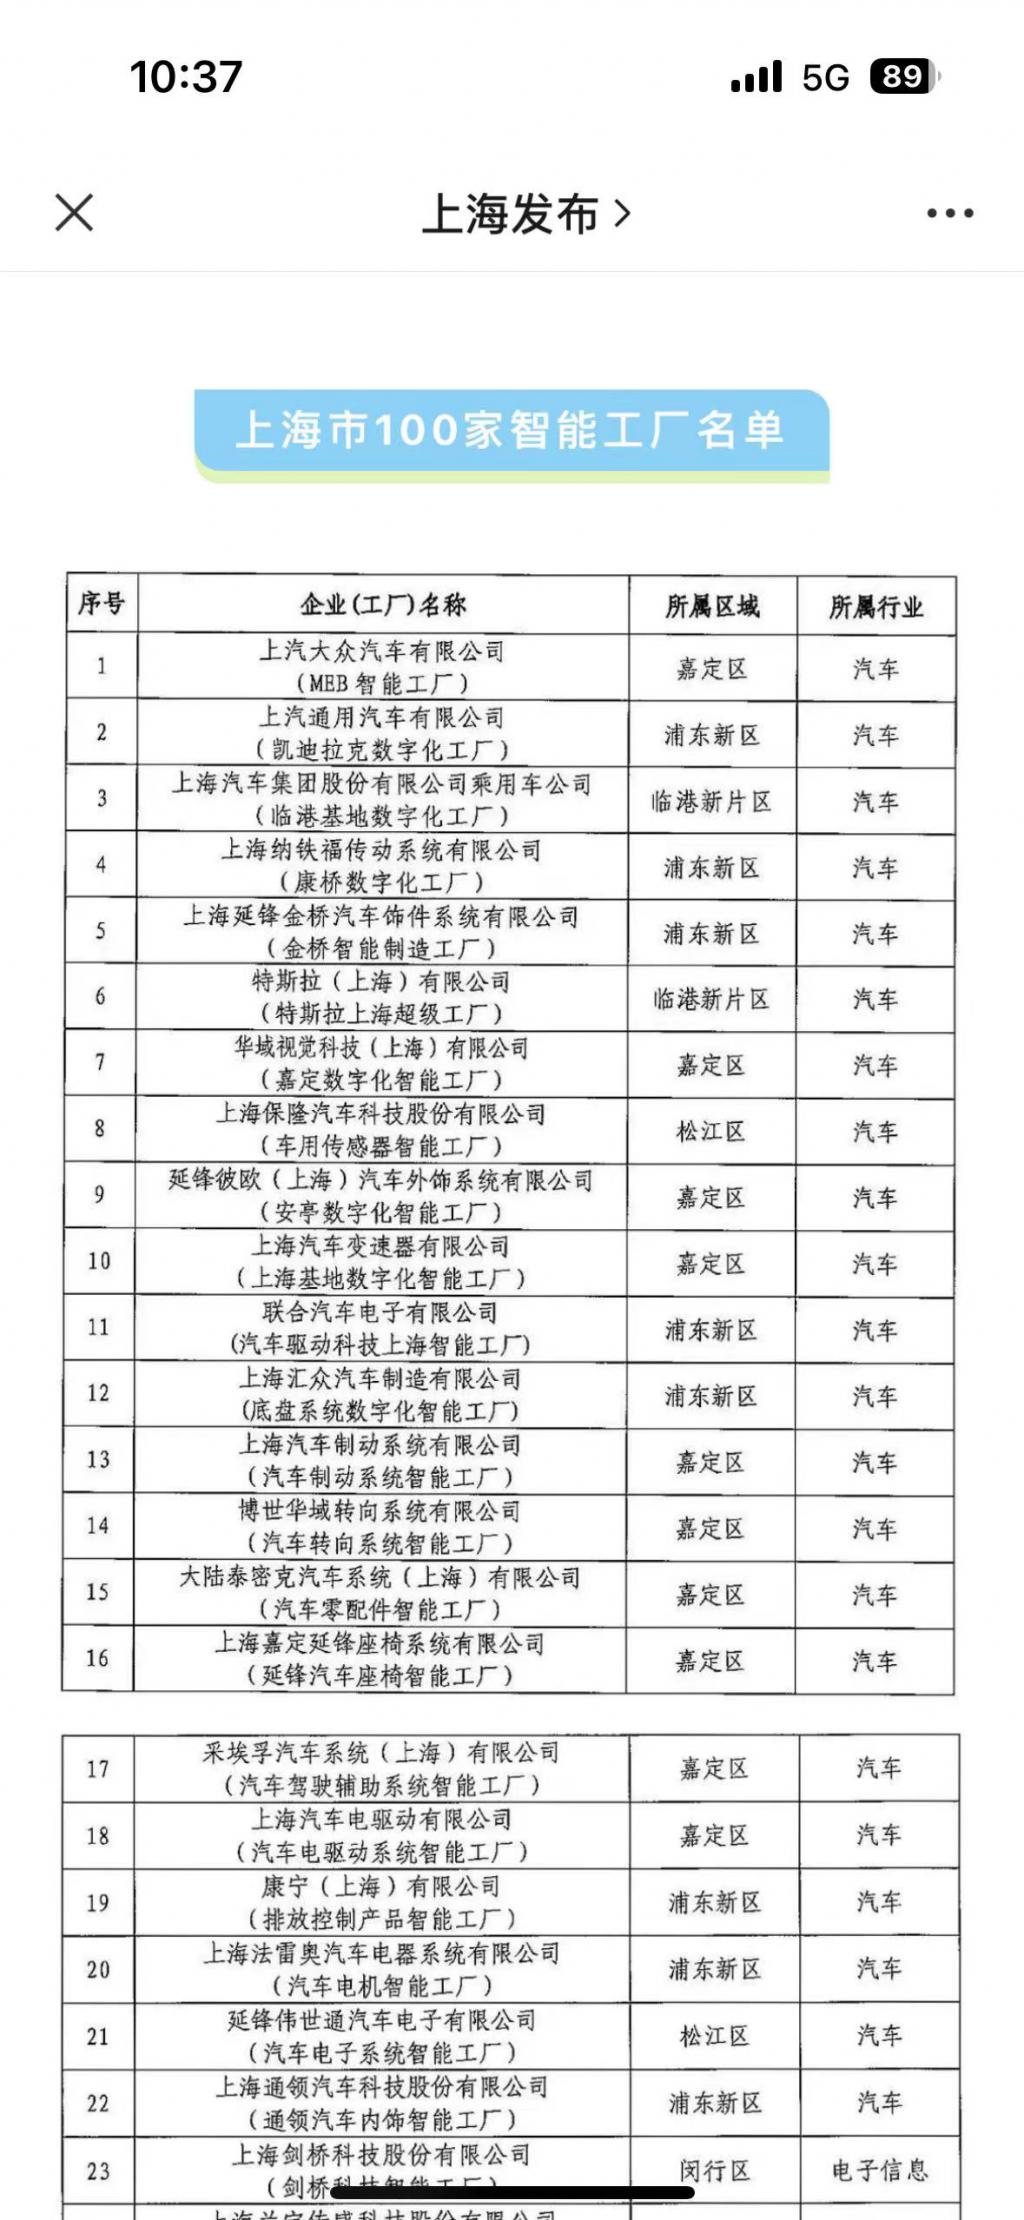 上汽大众 MEB 智能工厂入选上海市 100 家智能工厂